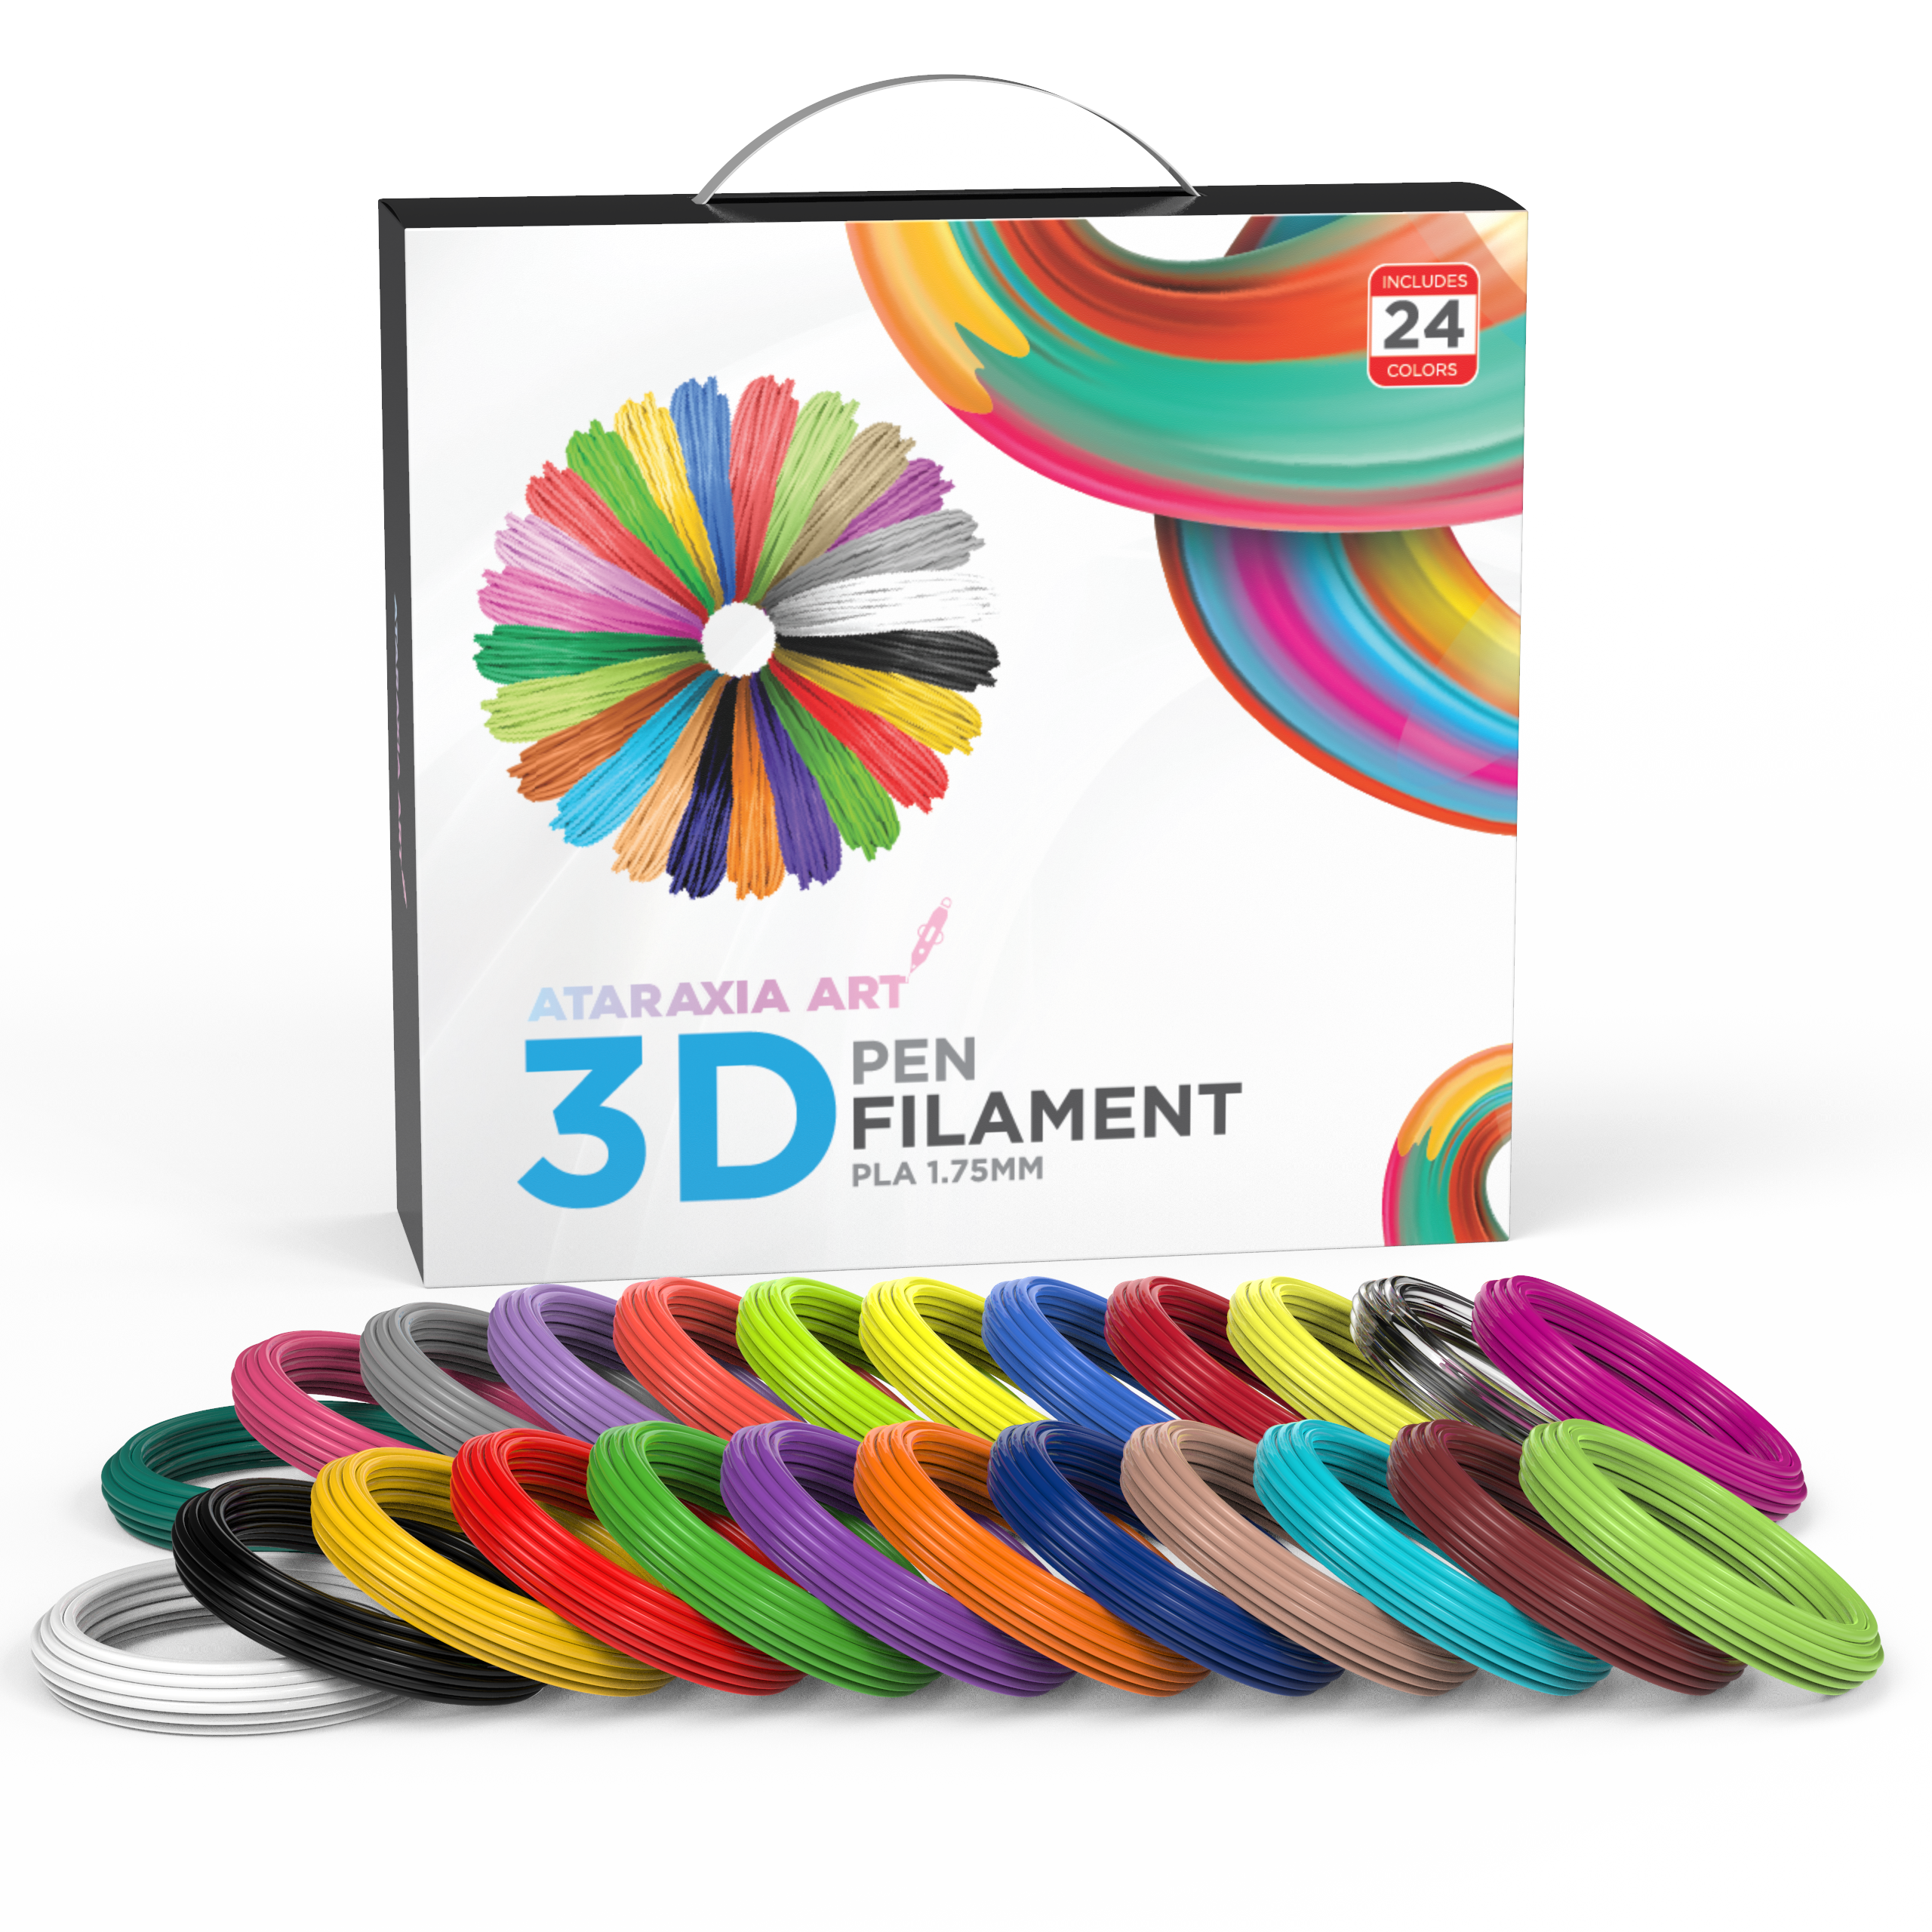 ATARAXIA ART 24 Colors 3D Pen PLA Filament Refills 1.75mm, Each 10m/33ft  Total 782ft, 4 Fluorescent & 4 Translucent Color, Kids Safe 3D Printer & Pen  • Ataraxiaart